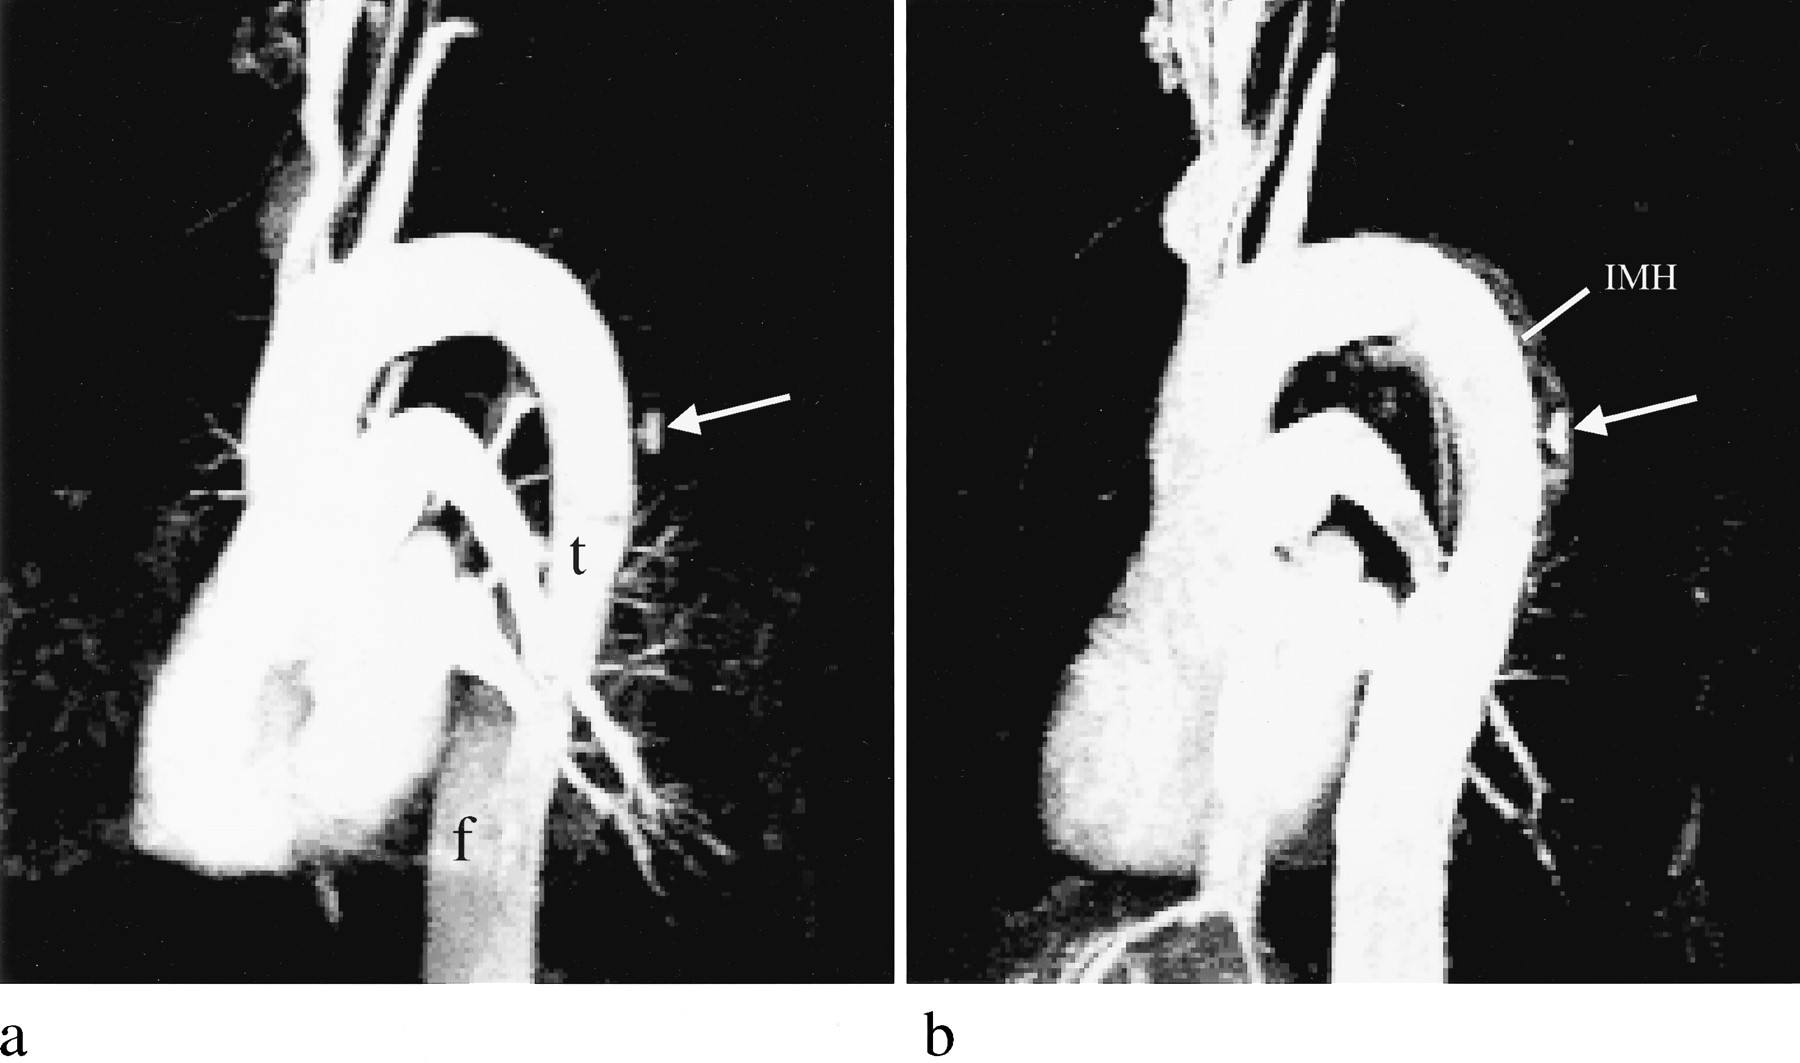 زخم نافذ آئورت در نمای ام آر آی آنژیوگرافی Penetrating Aortic Ulcer in Magnetic Rosnance Angiography (MRA)